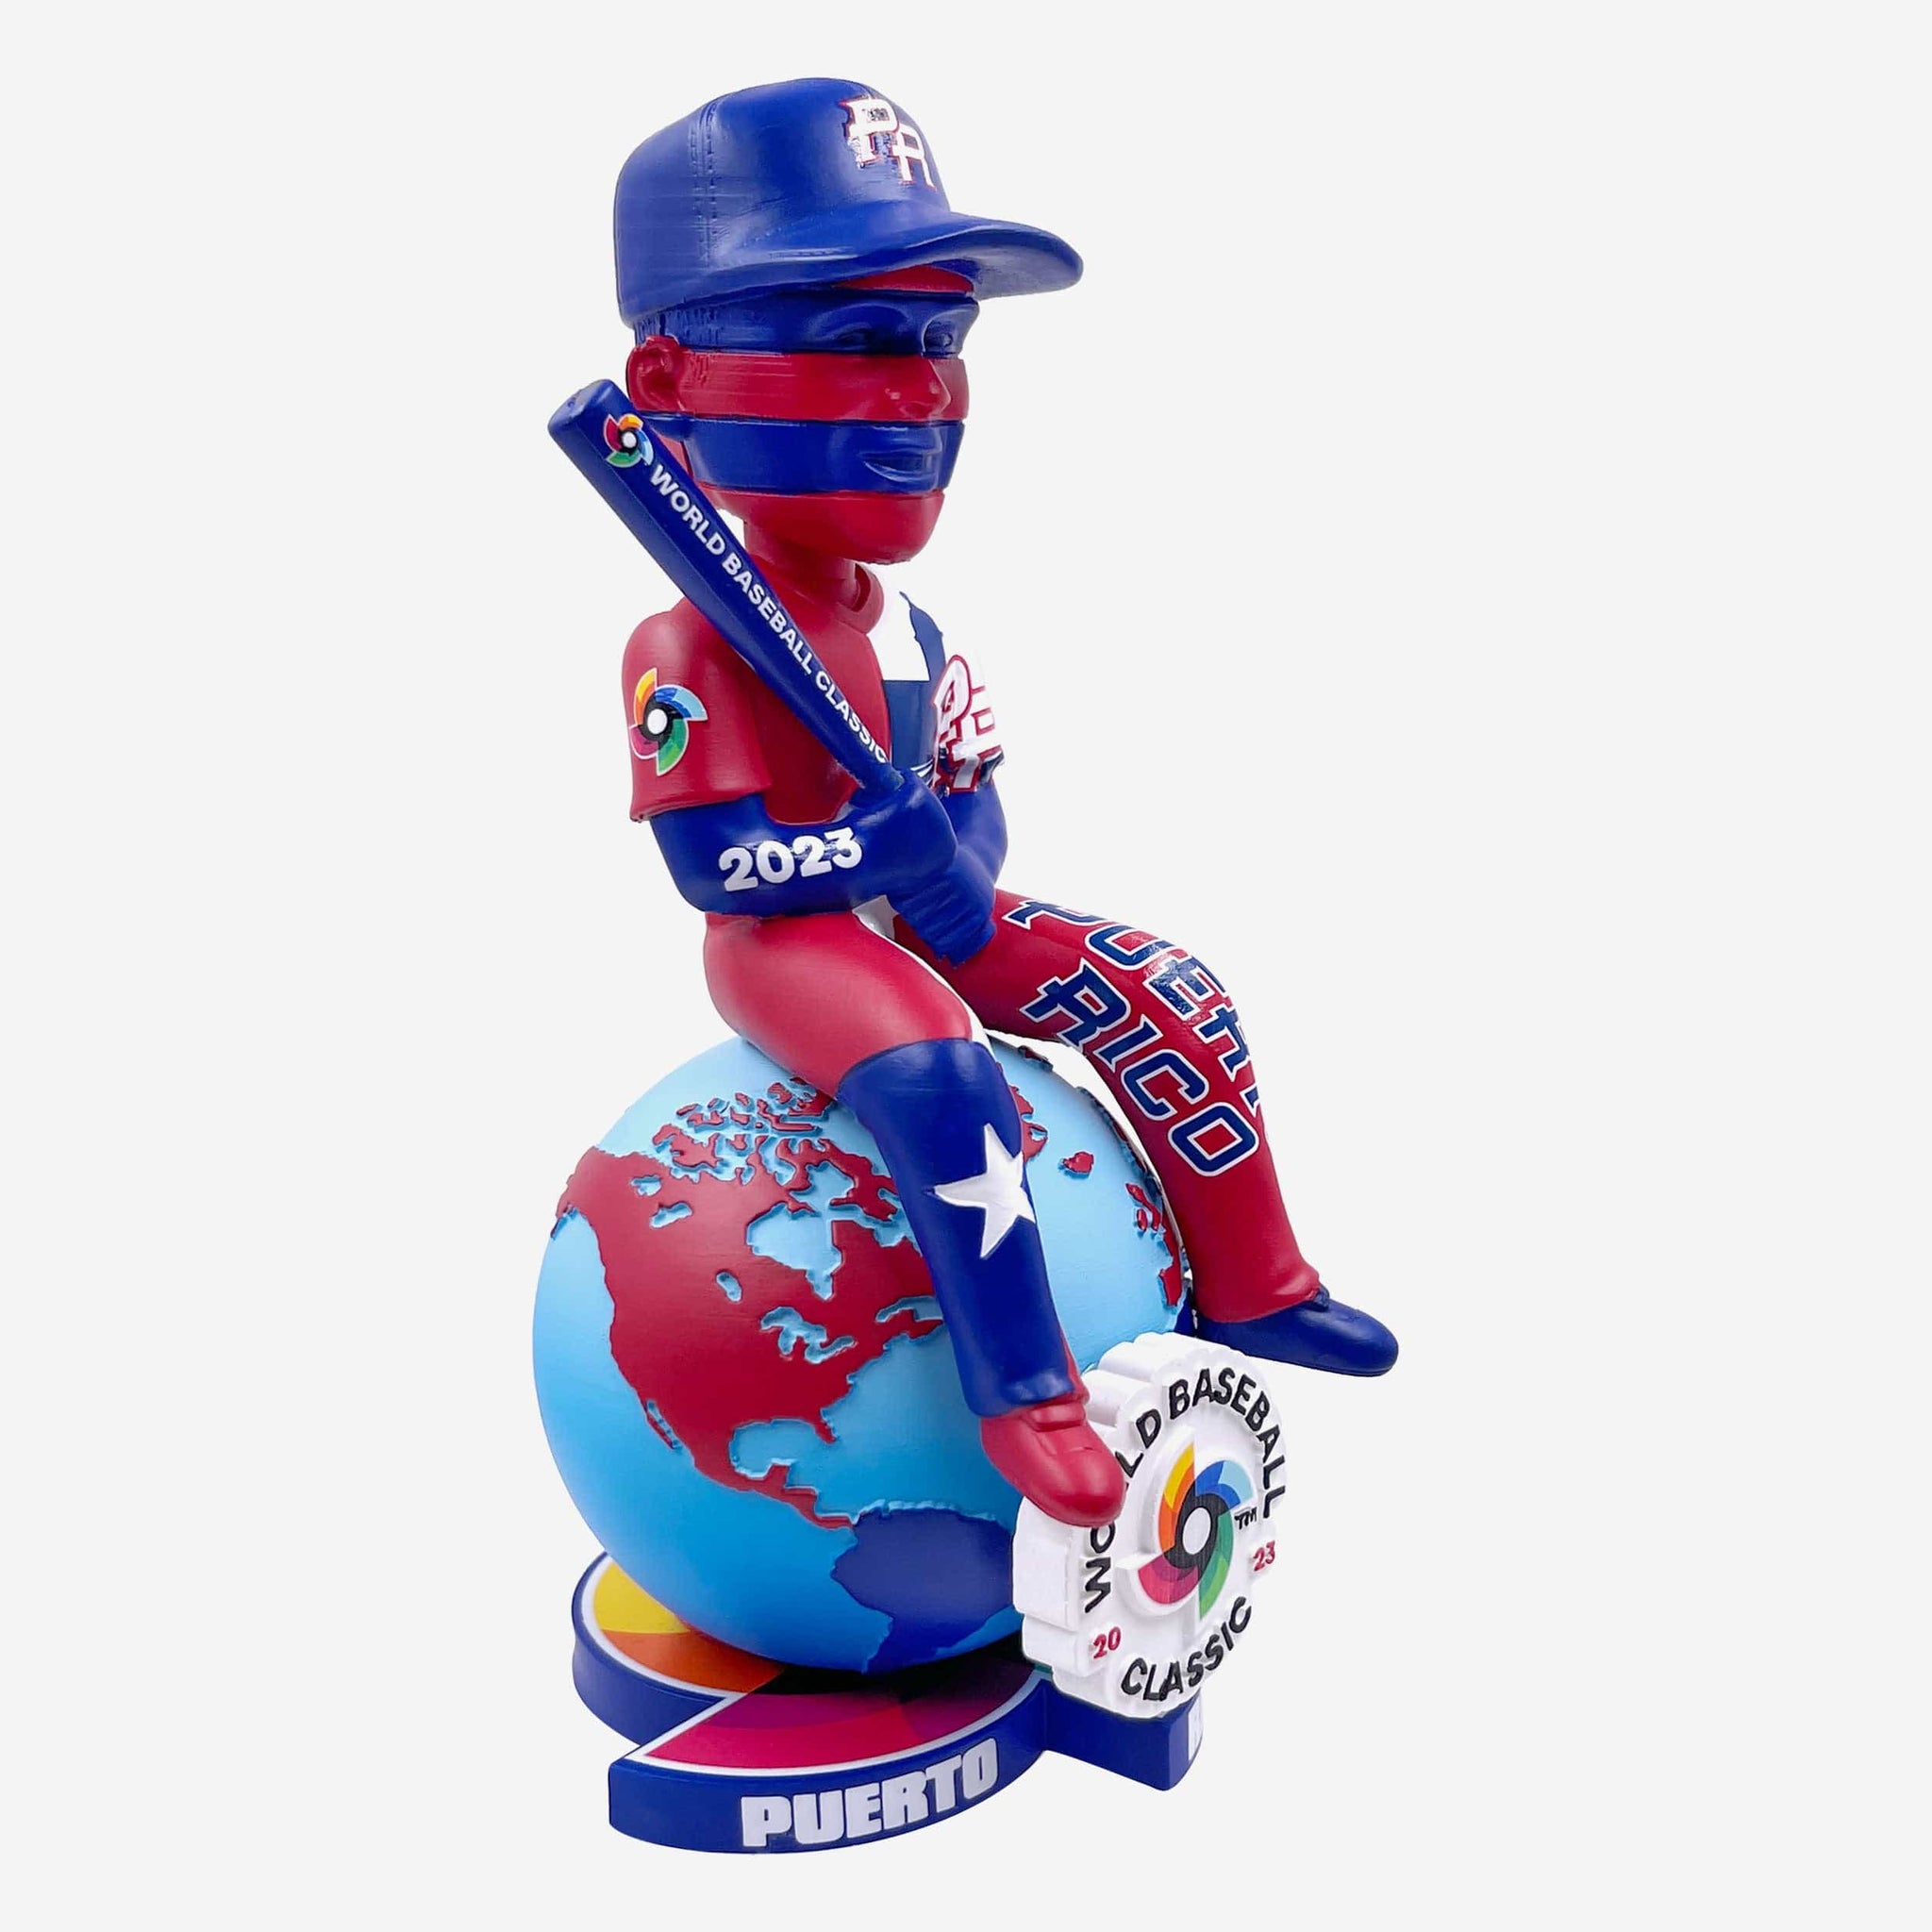 Puerto Rico 2023 World Baseball Classic Bobbles On Parade